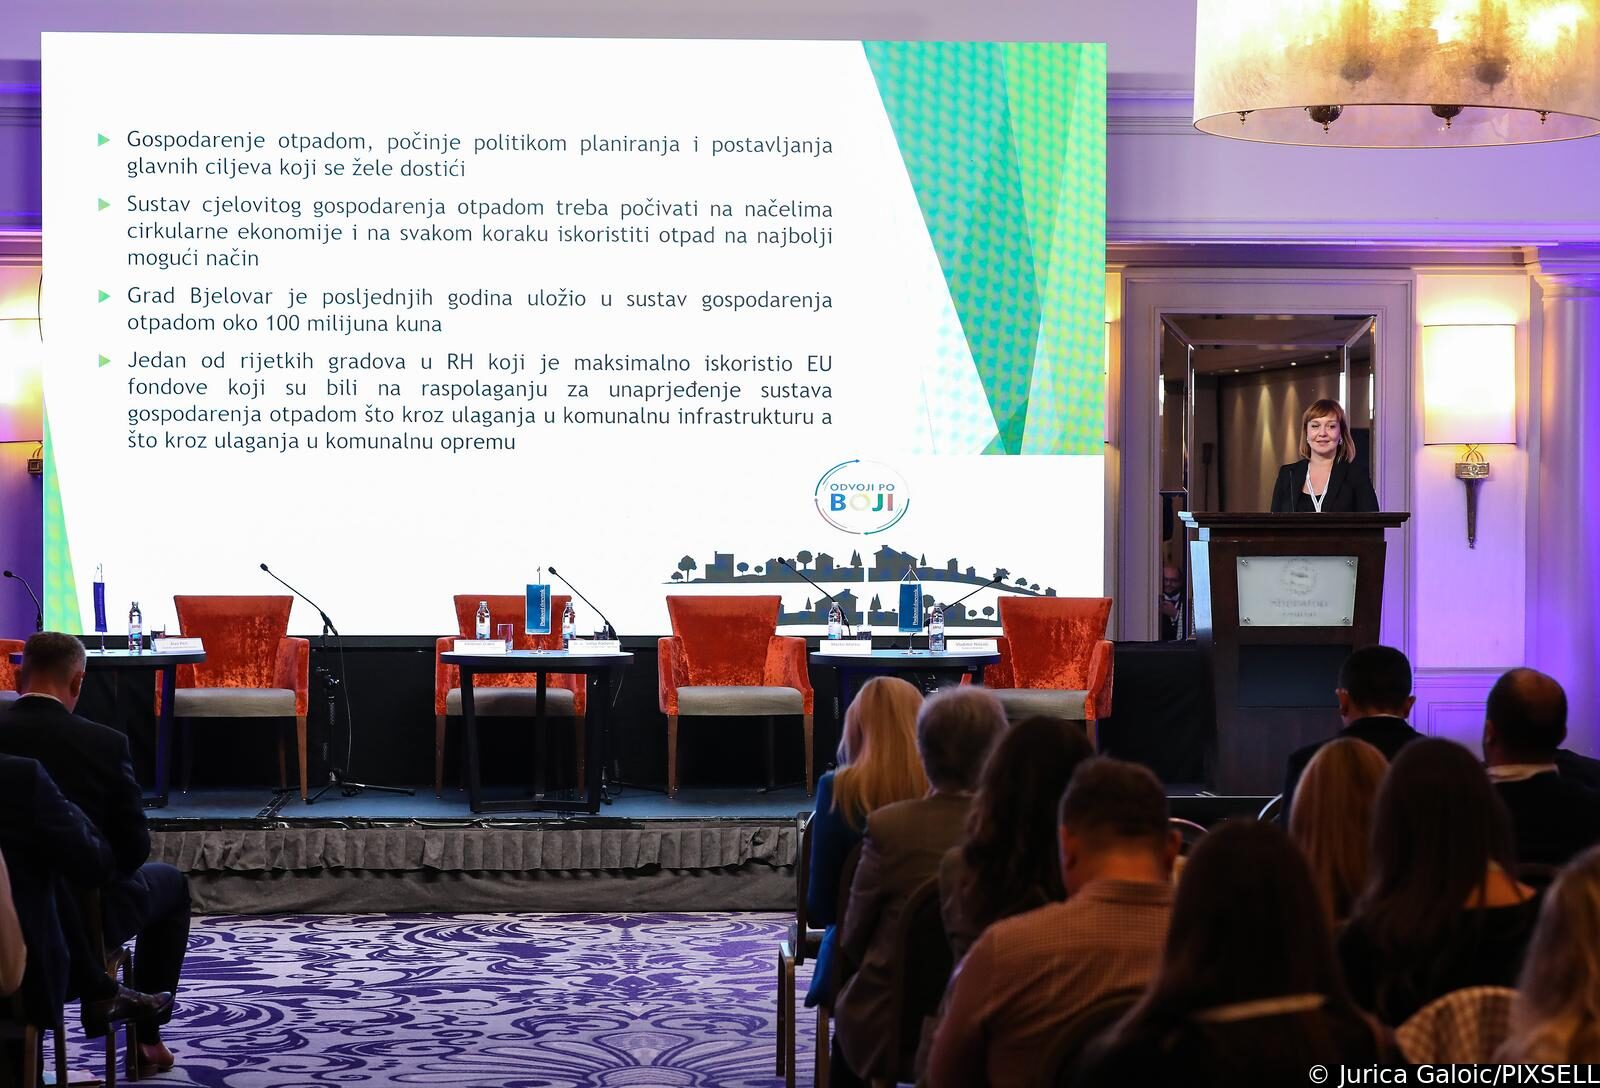 Zagreb: U hotelu Sheraton održana je konferencija 12. Croatia Waste Expo 2022